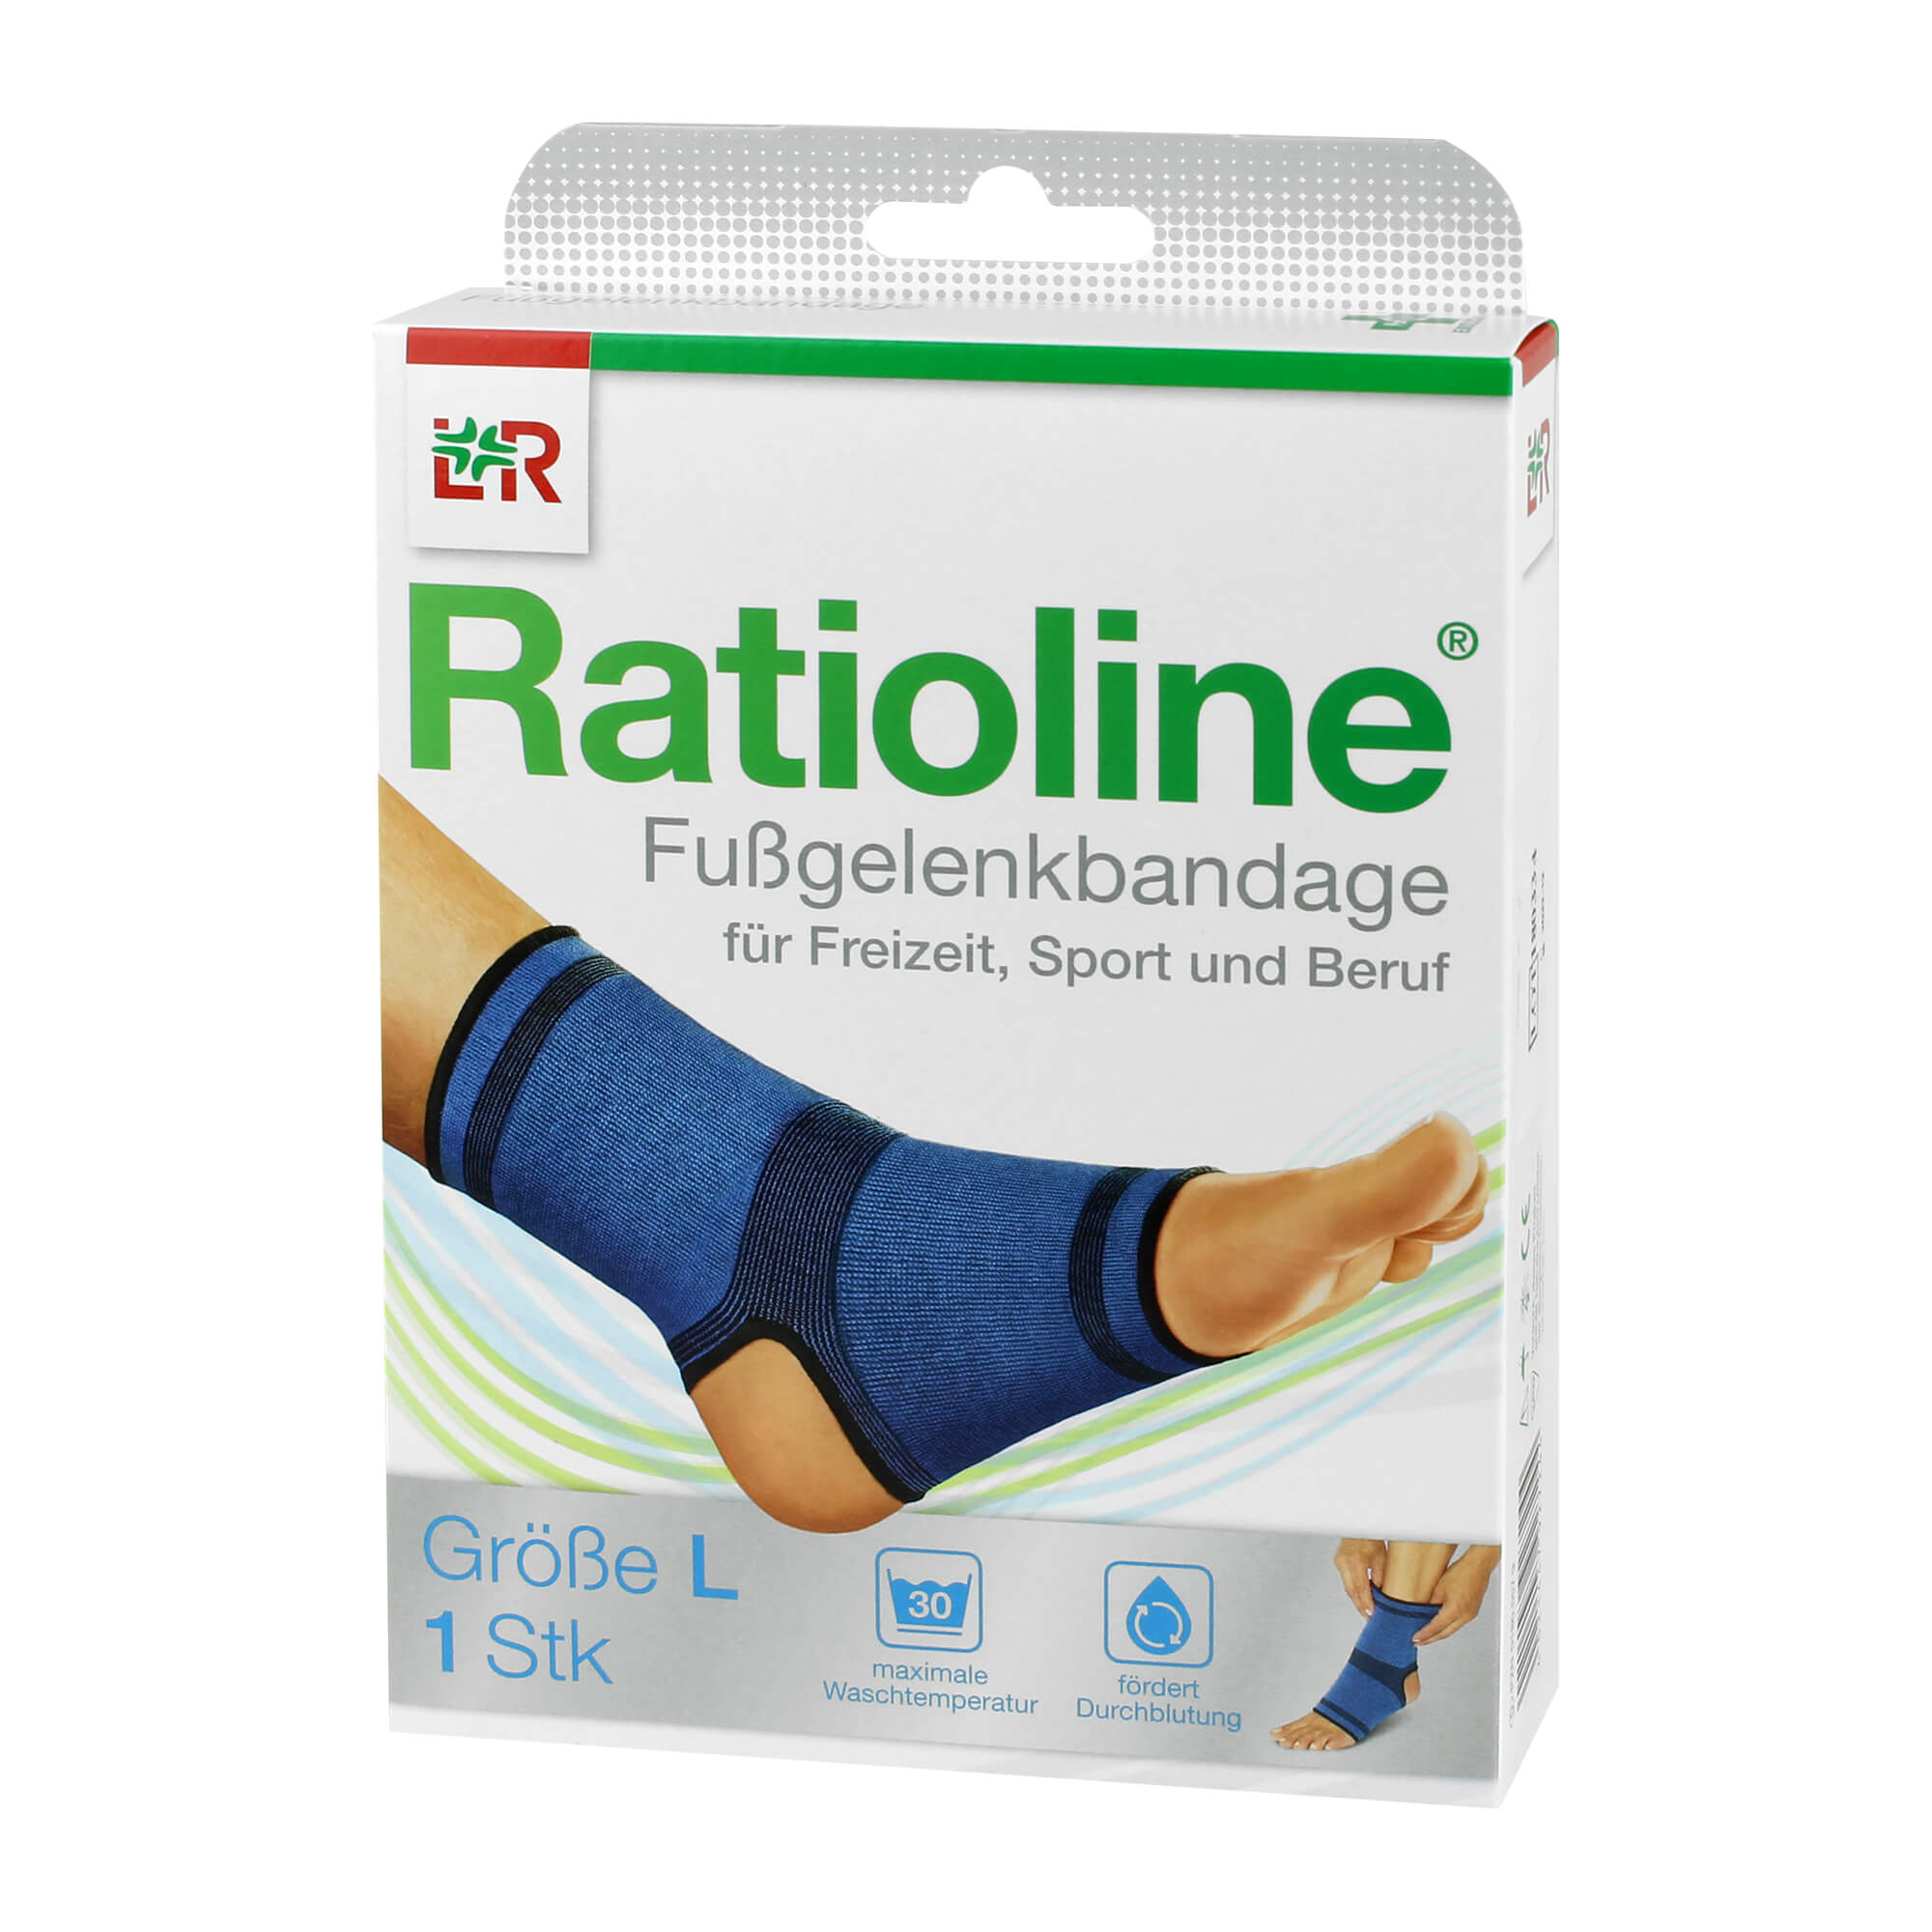 Stabilisierende Bandage – unterstützt bei Bewegung und lindert den Schmerz.